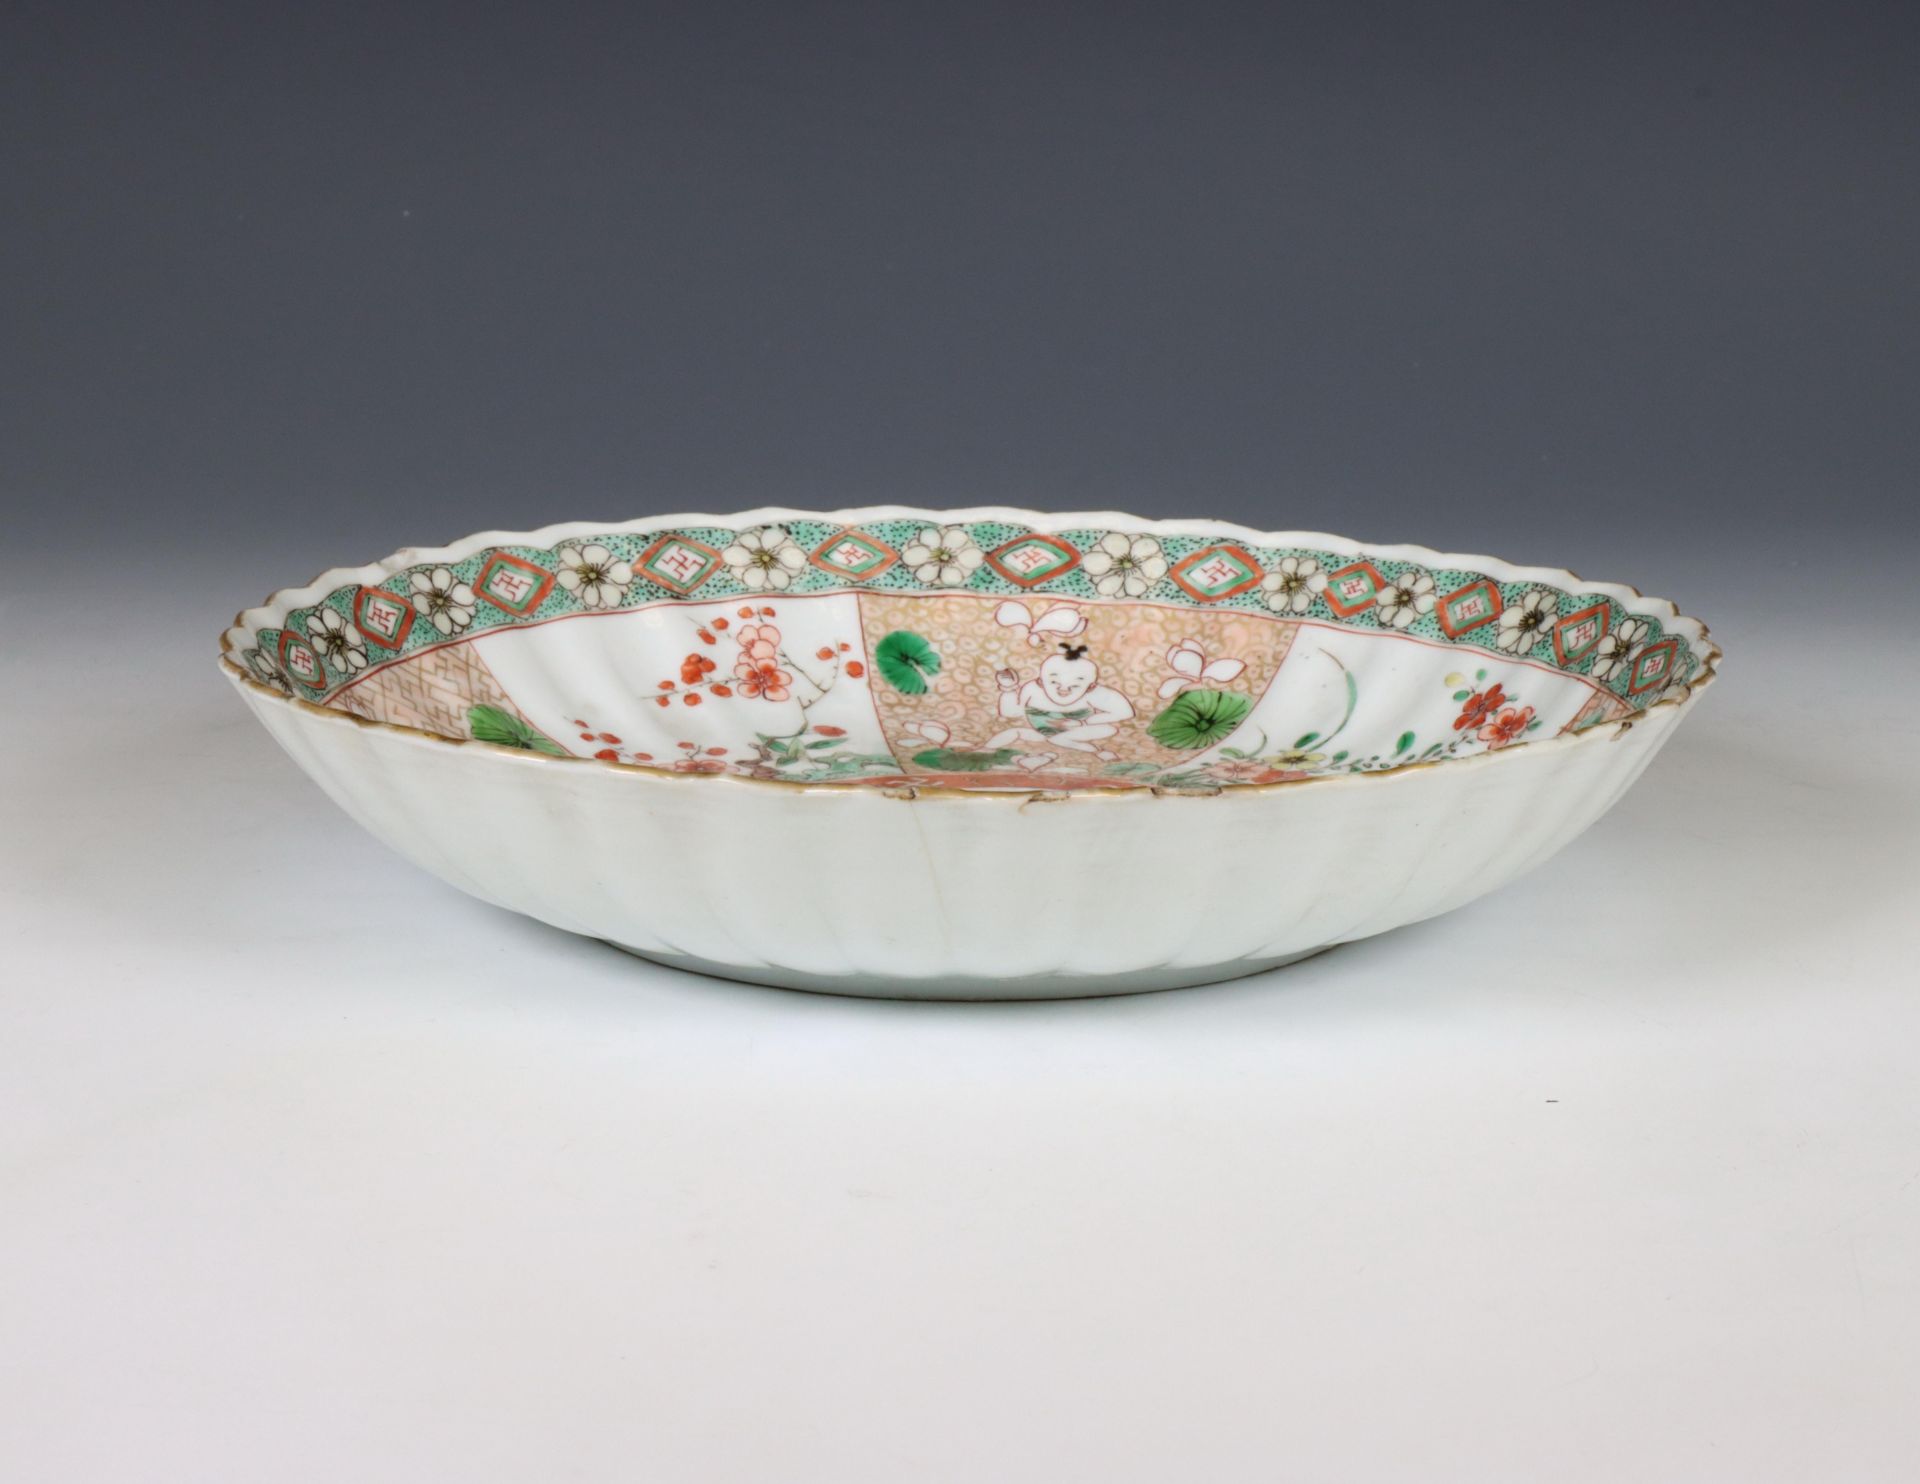 China, famille verte porcelain 'boy' dish, Kangxi period (1662-1722), - Image 2 of 4